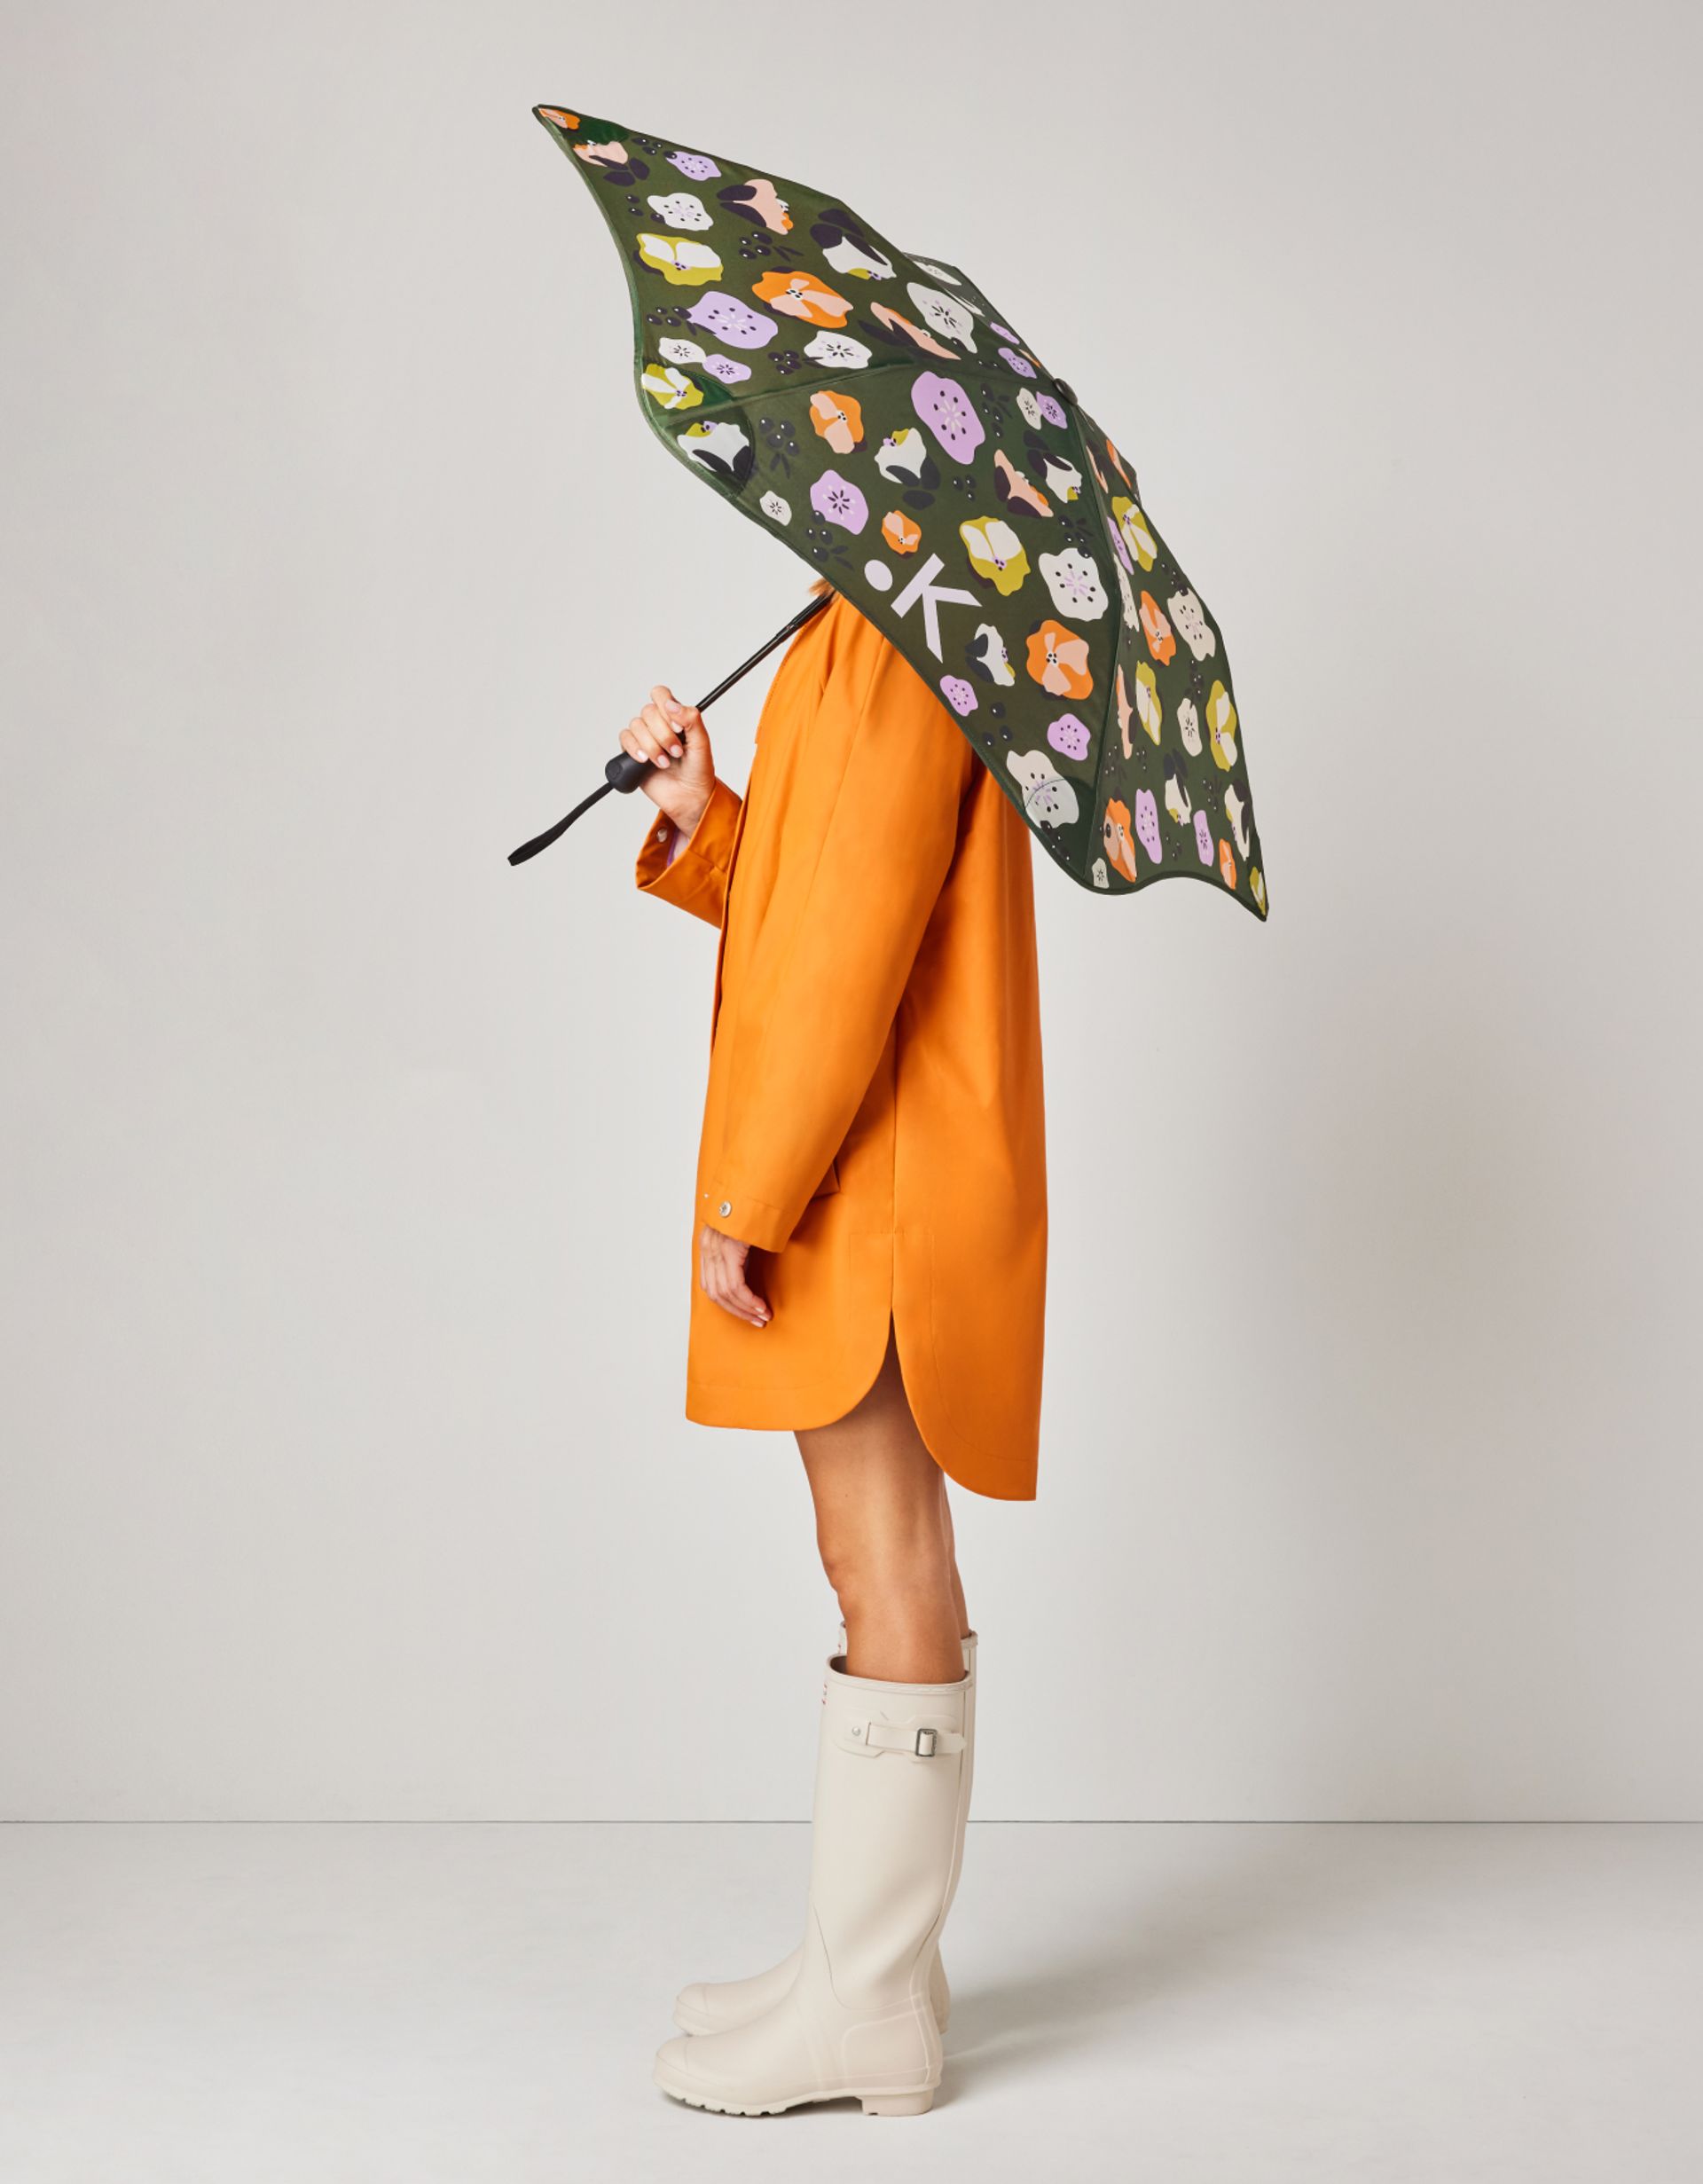 Olive Floral Print Umbrella